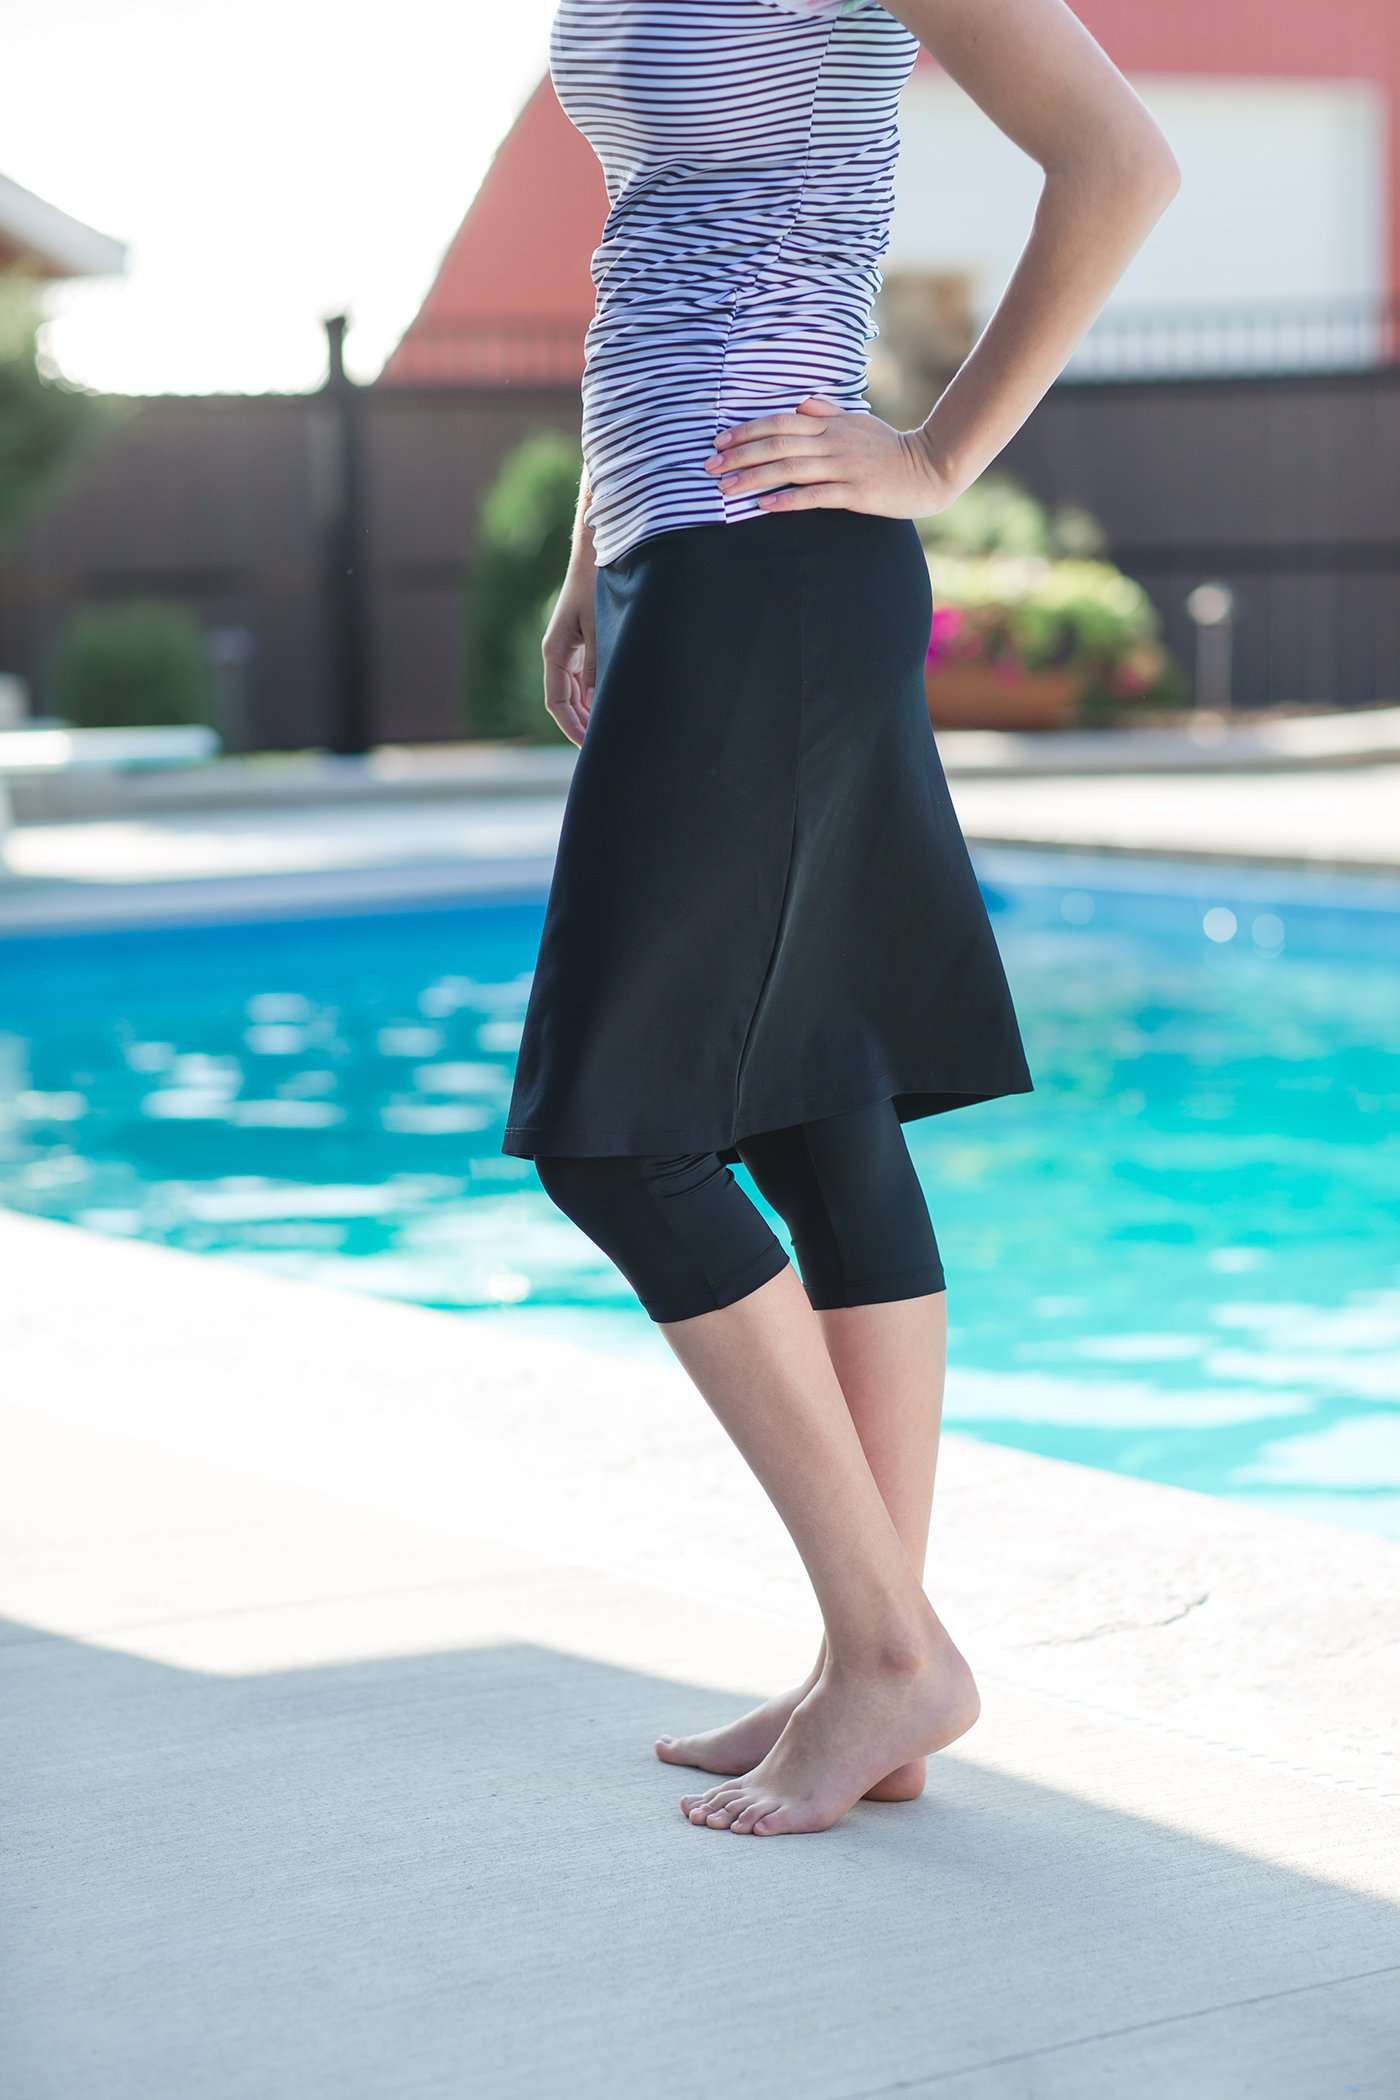 Custom Sewn Swim Skirt With Leggings, Modest Skirted Leggings for Women,  Black Modest Athletic & Swim Skirt With Built in Pants for Ladies -   Israel